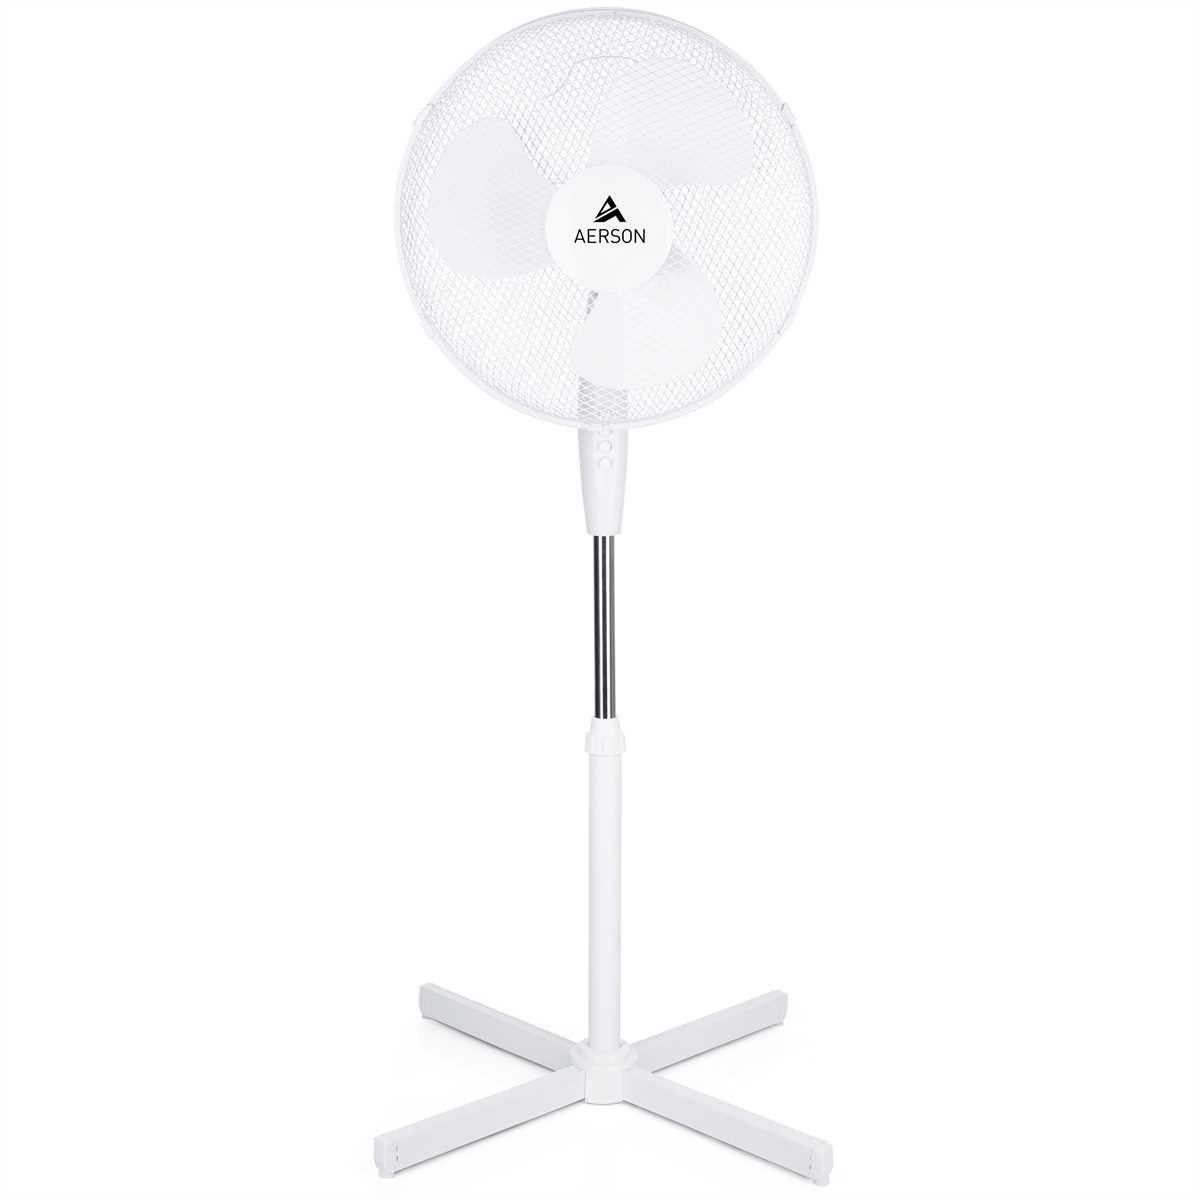 AERSON Standventilator Ventilator 3 80° Weiß Oszillation Ø40cm, höhenverstellbar ca. 120cm, bis Geschwindigkeitsstufen